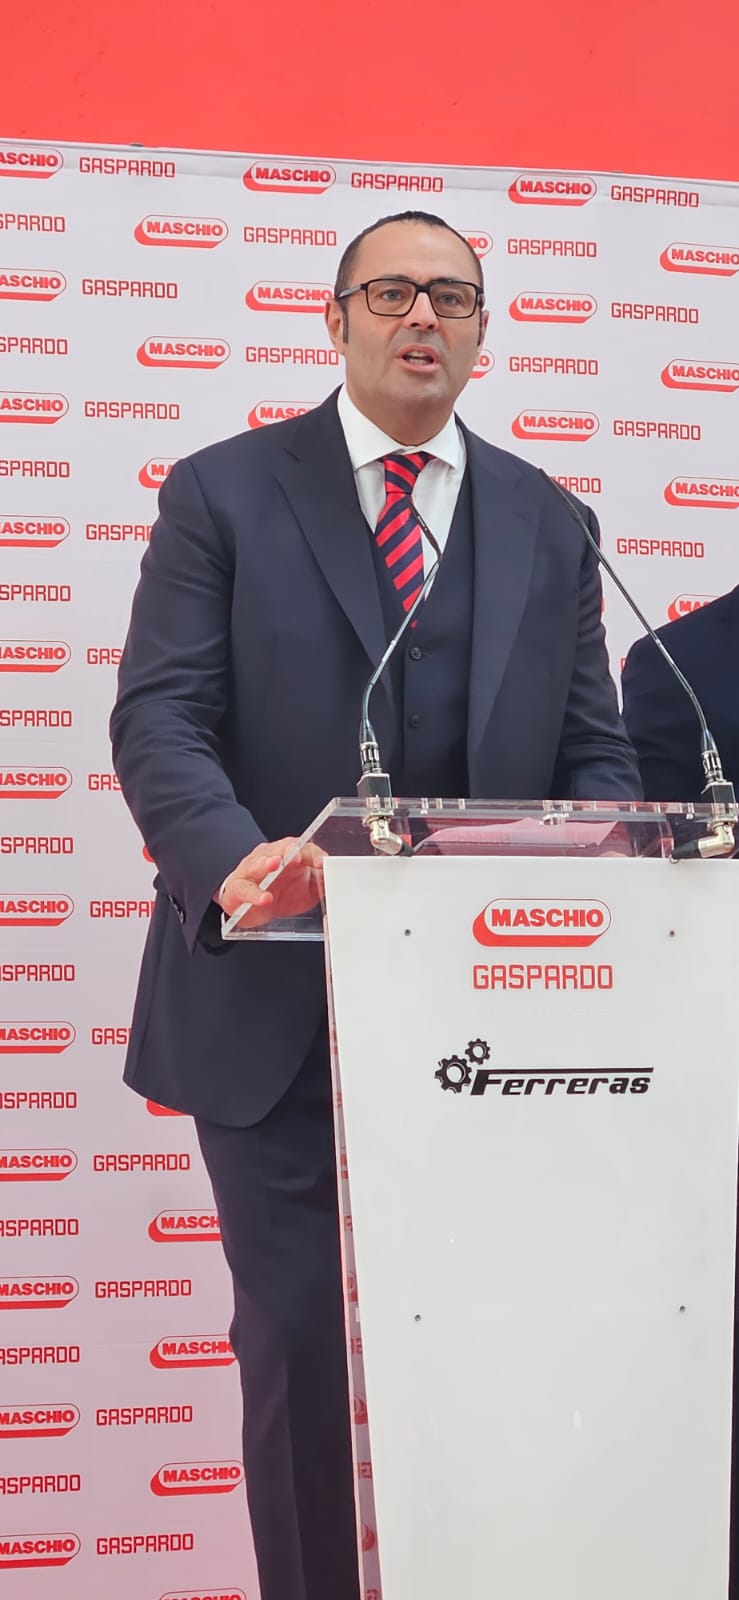 Mirco Maschio, presidente de Maschio Gaspardo